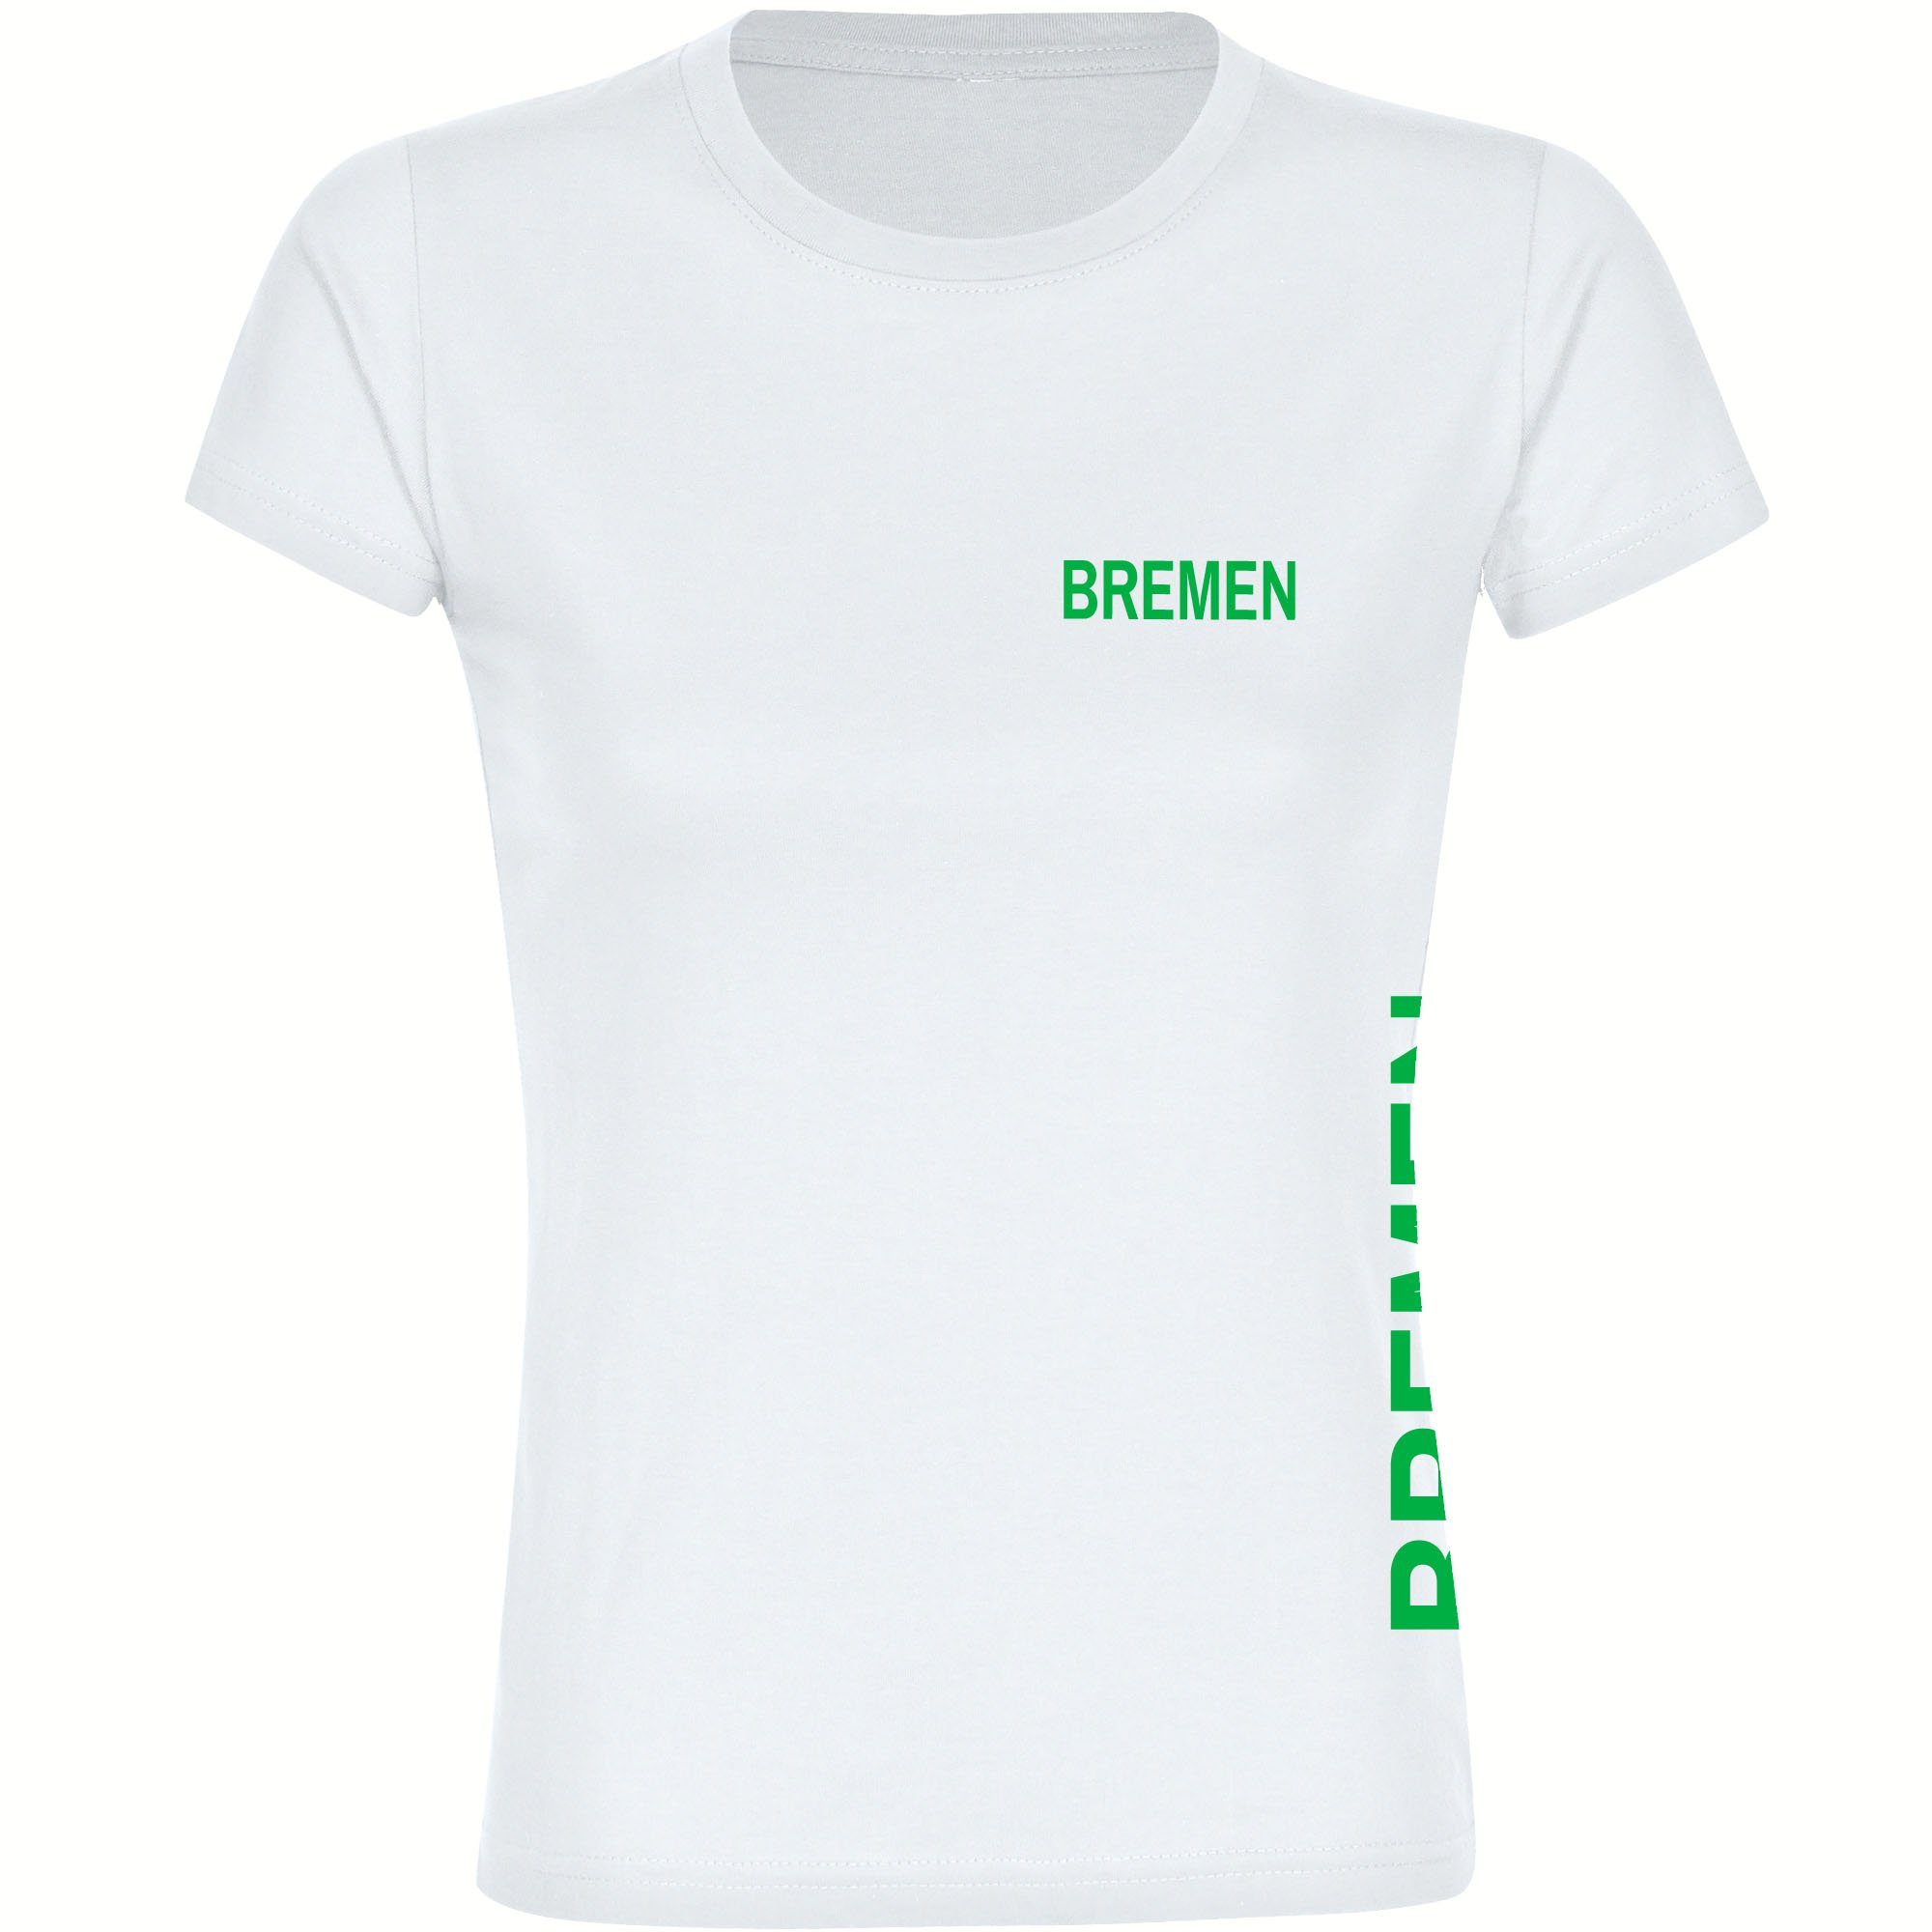 multifanshop T-Shirt Damen Bremen - Brust & Seite - Frauen